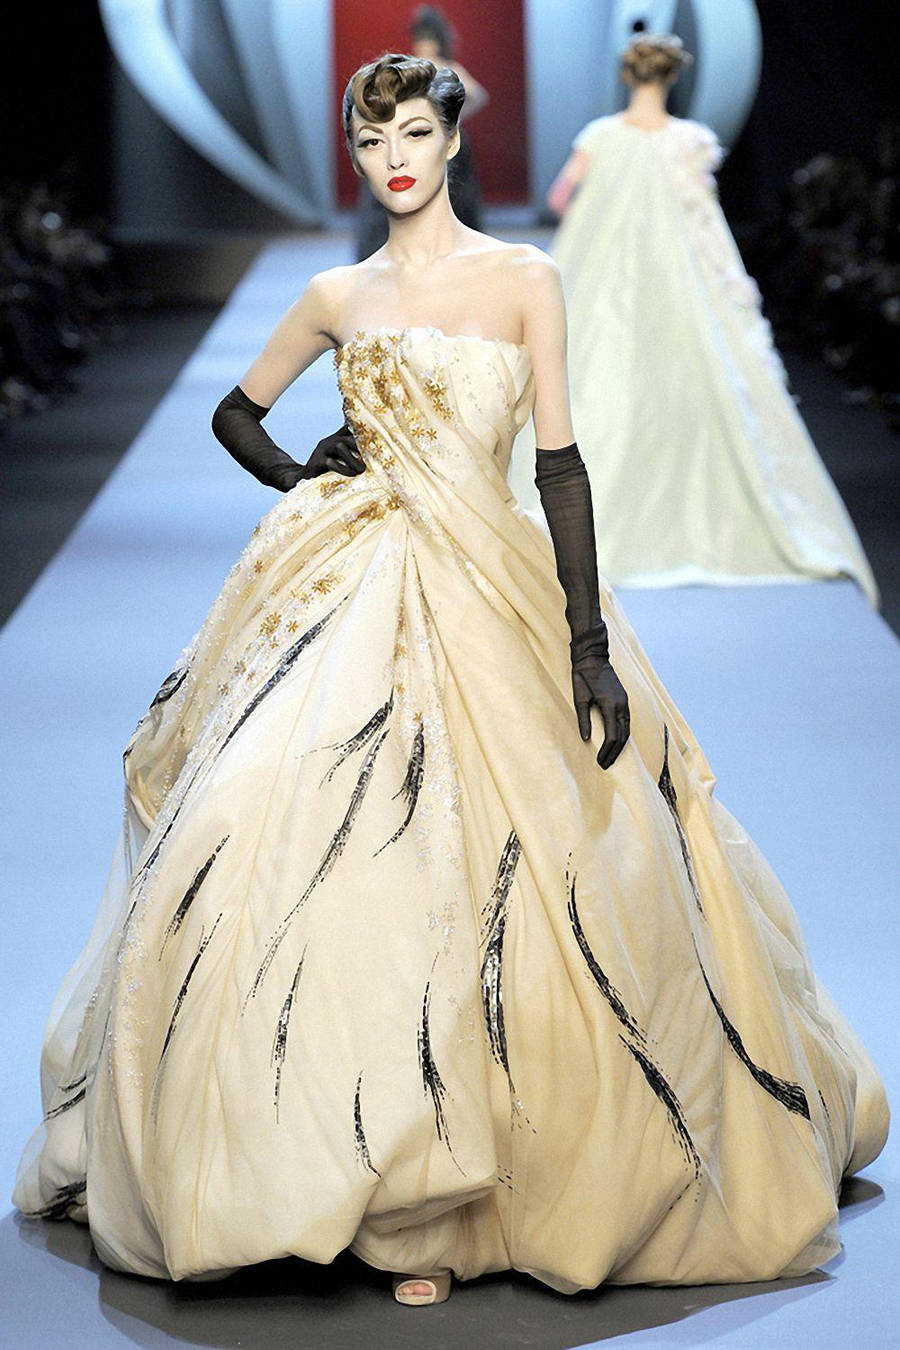 例如迪奥高定秀场的外套,大多数都采用的是丝绸面料,让模特们个个优雅